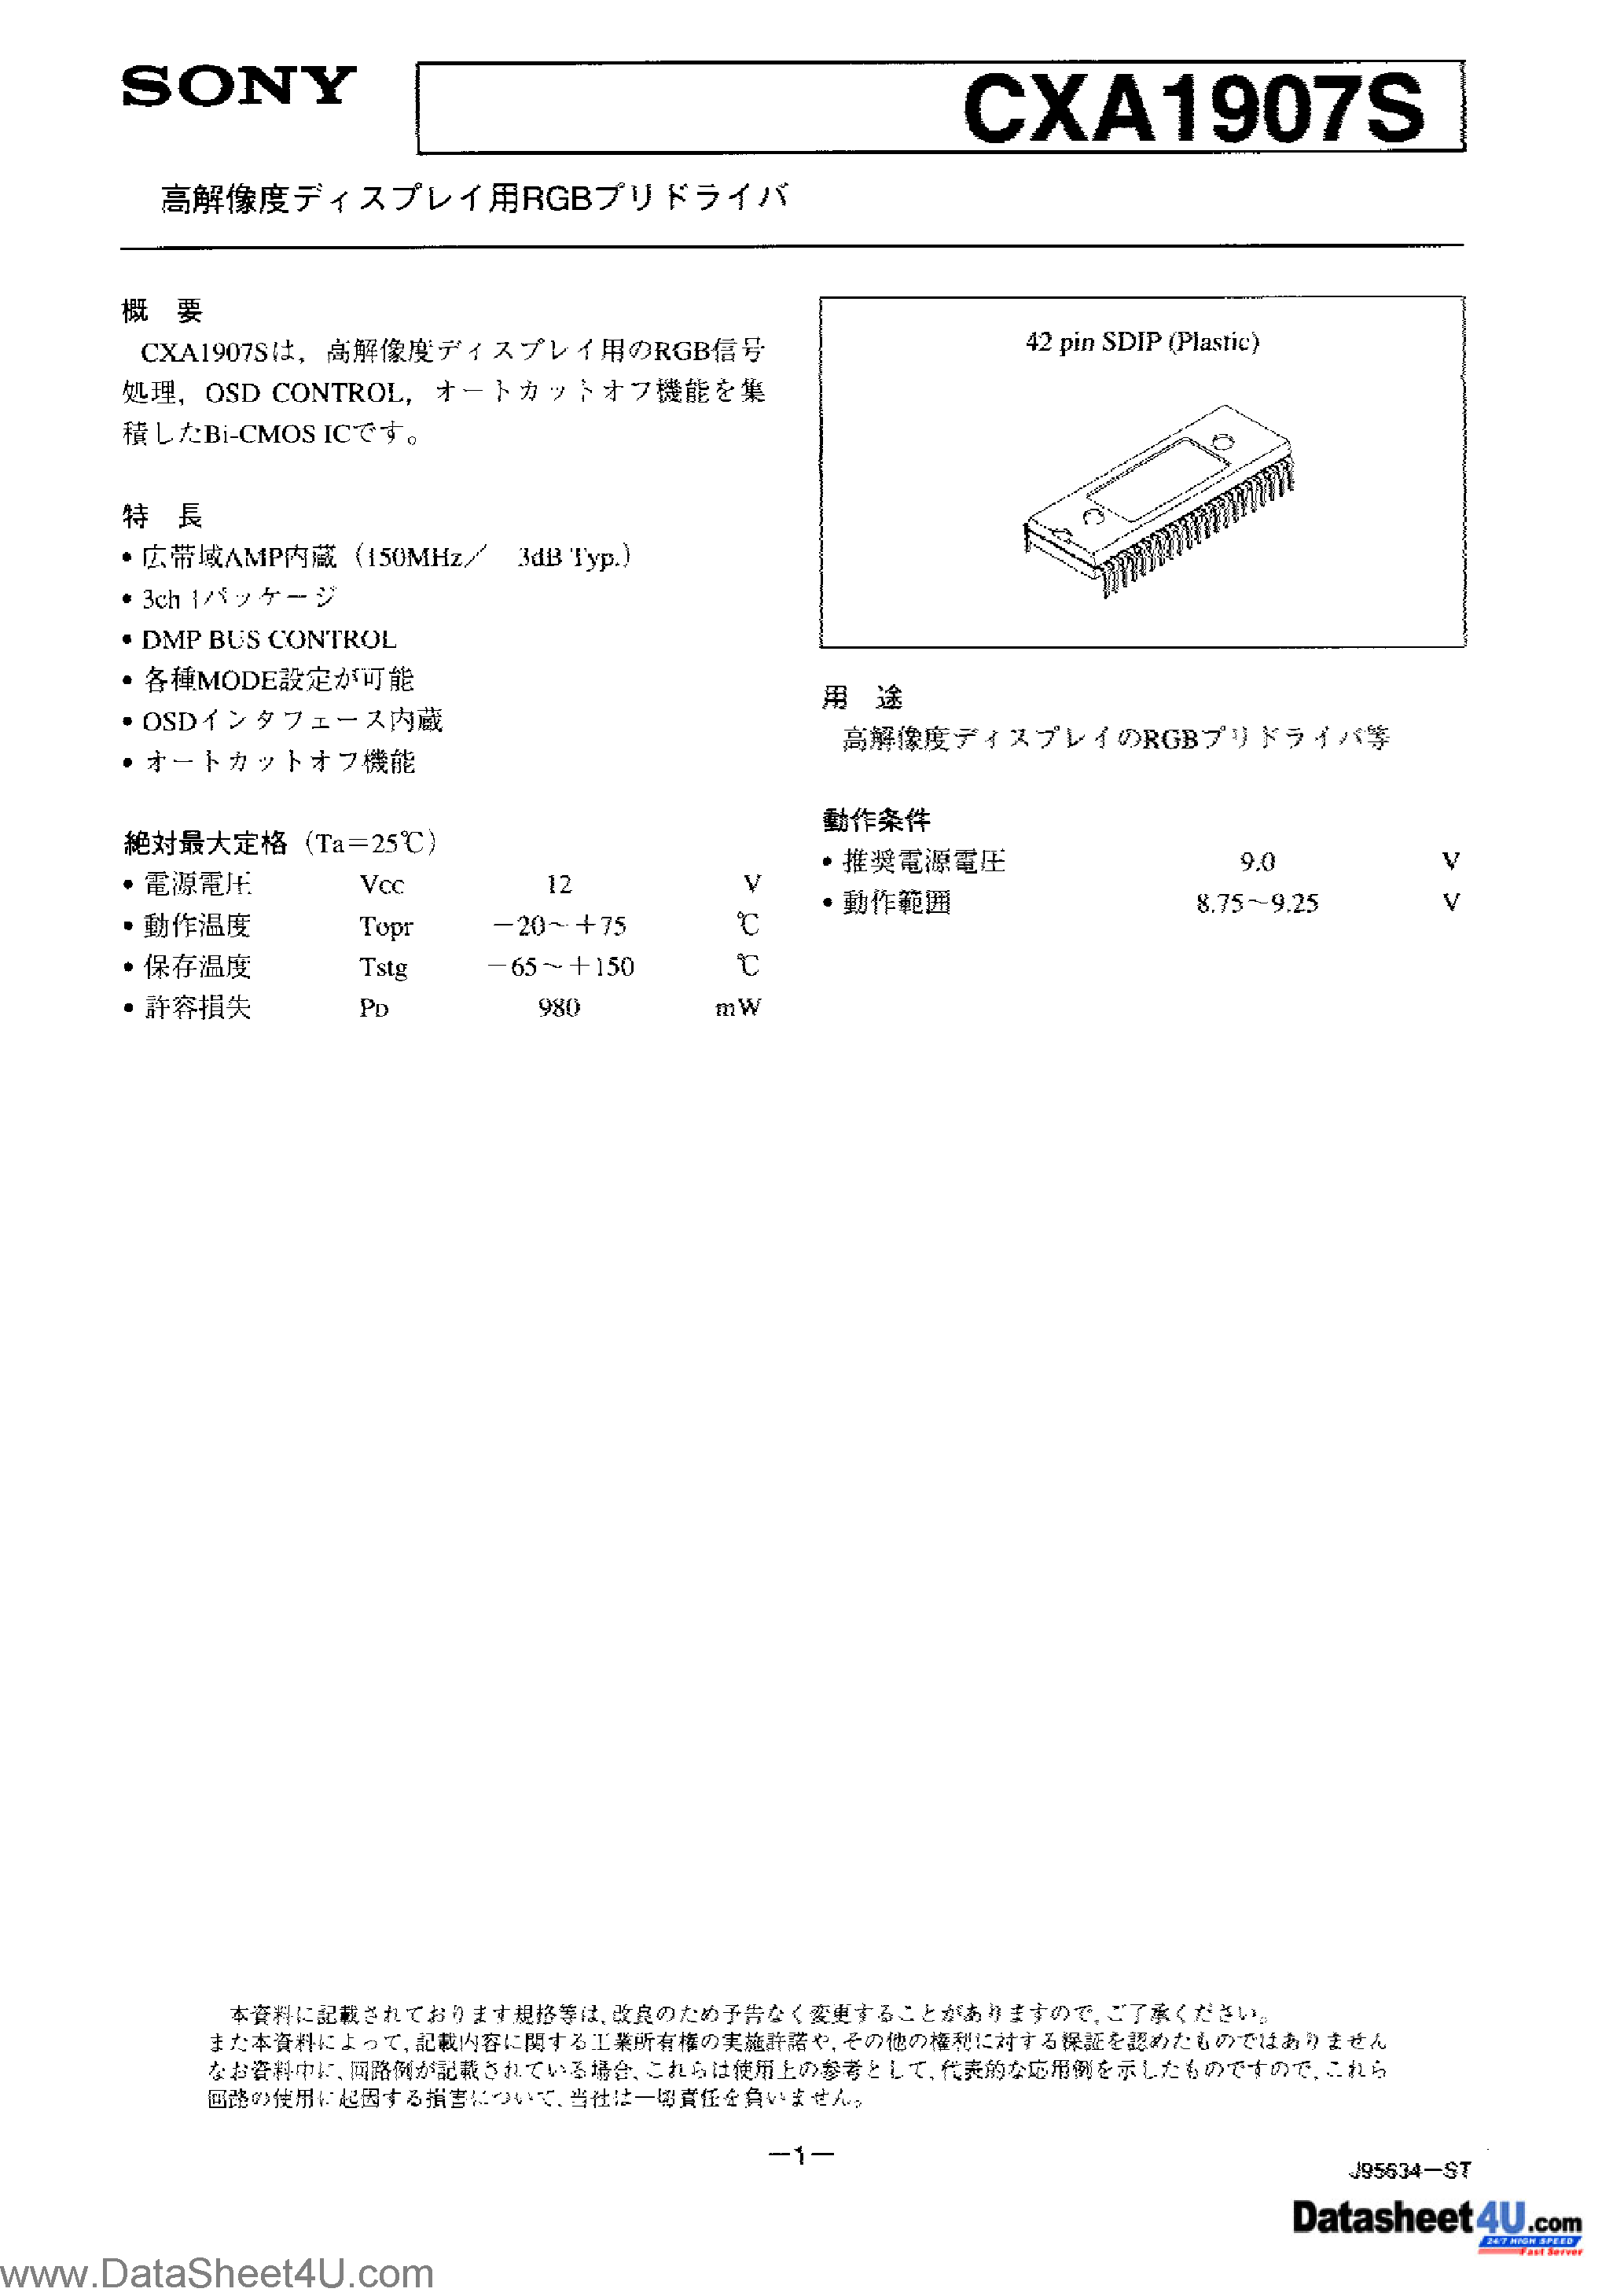 Даташит CXA1907S - CXA1907S Japanese страница 1